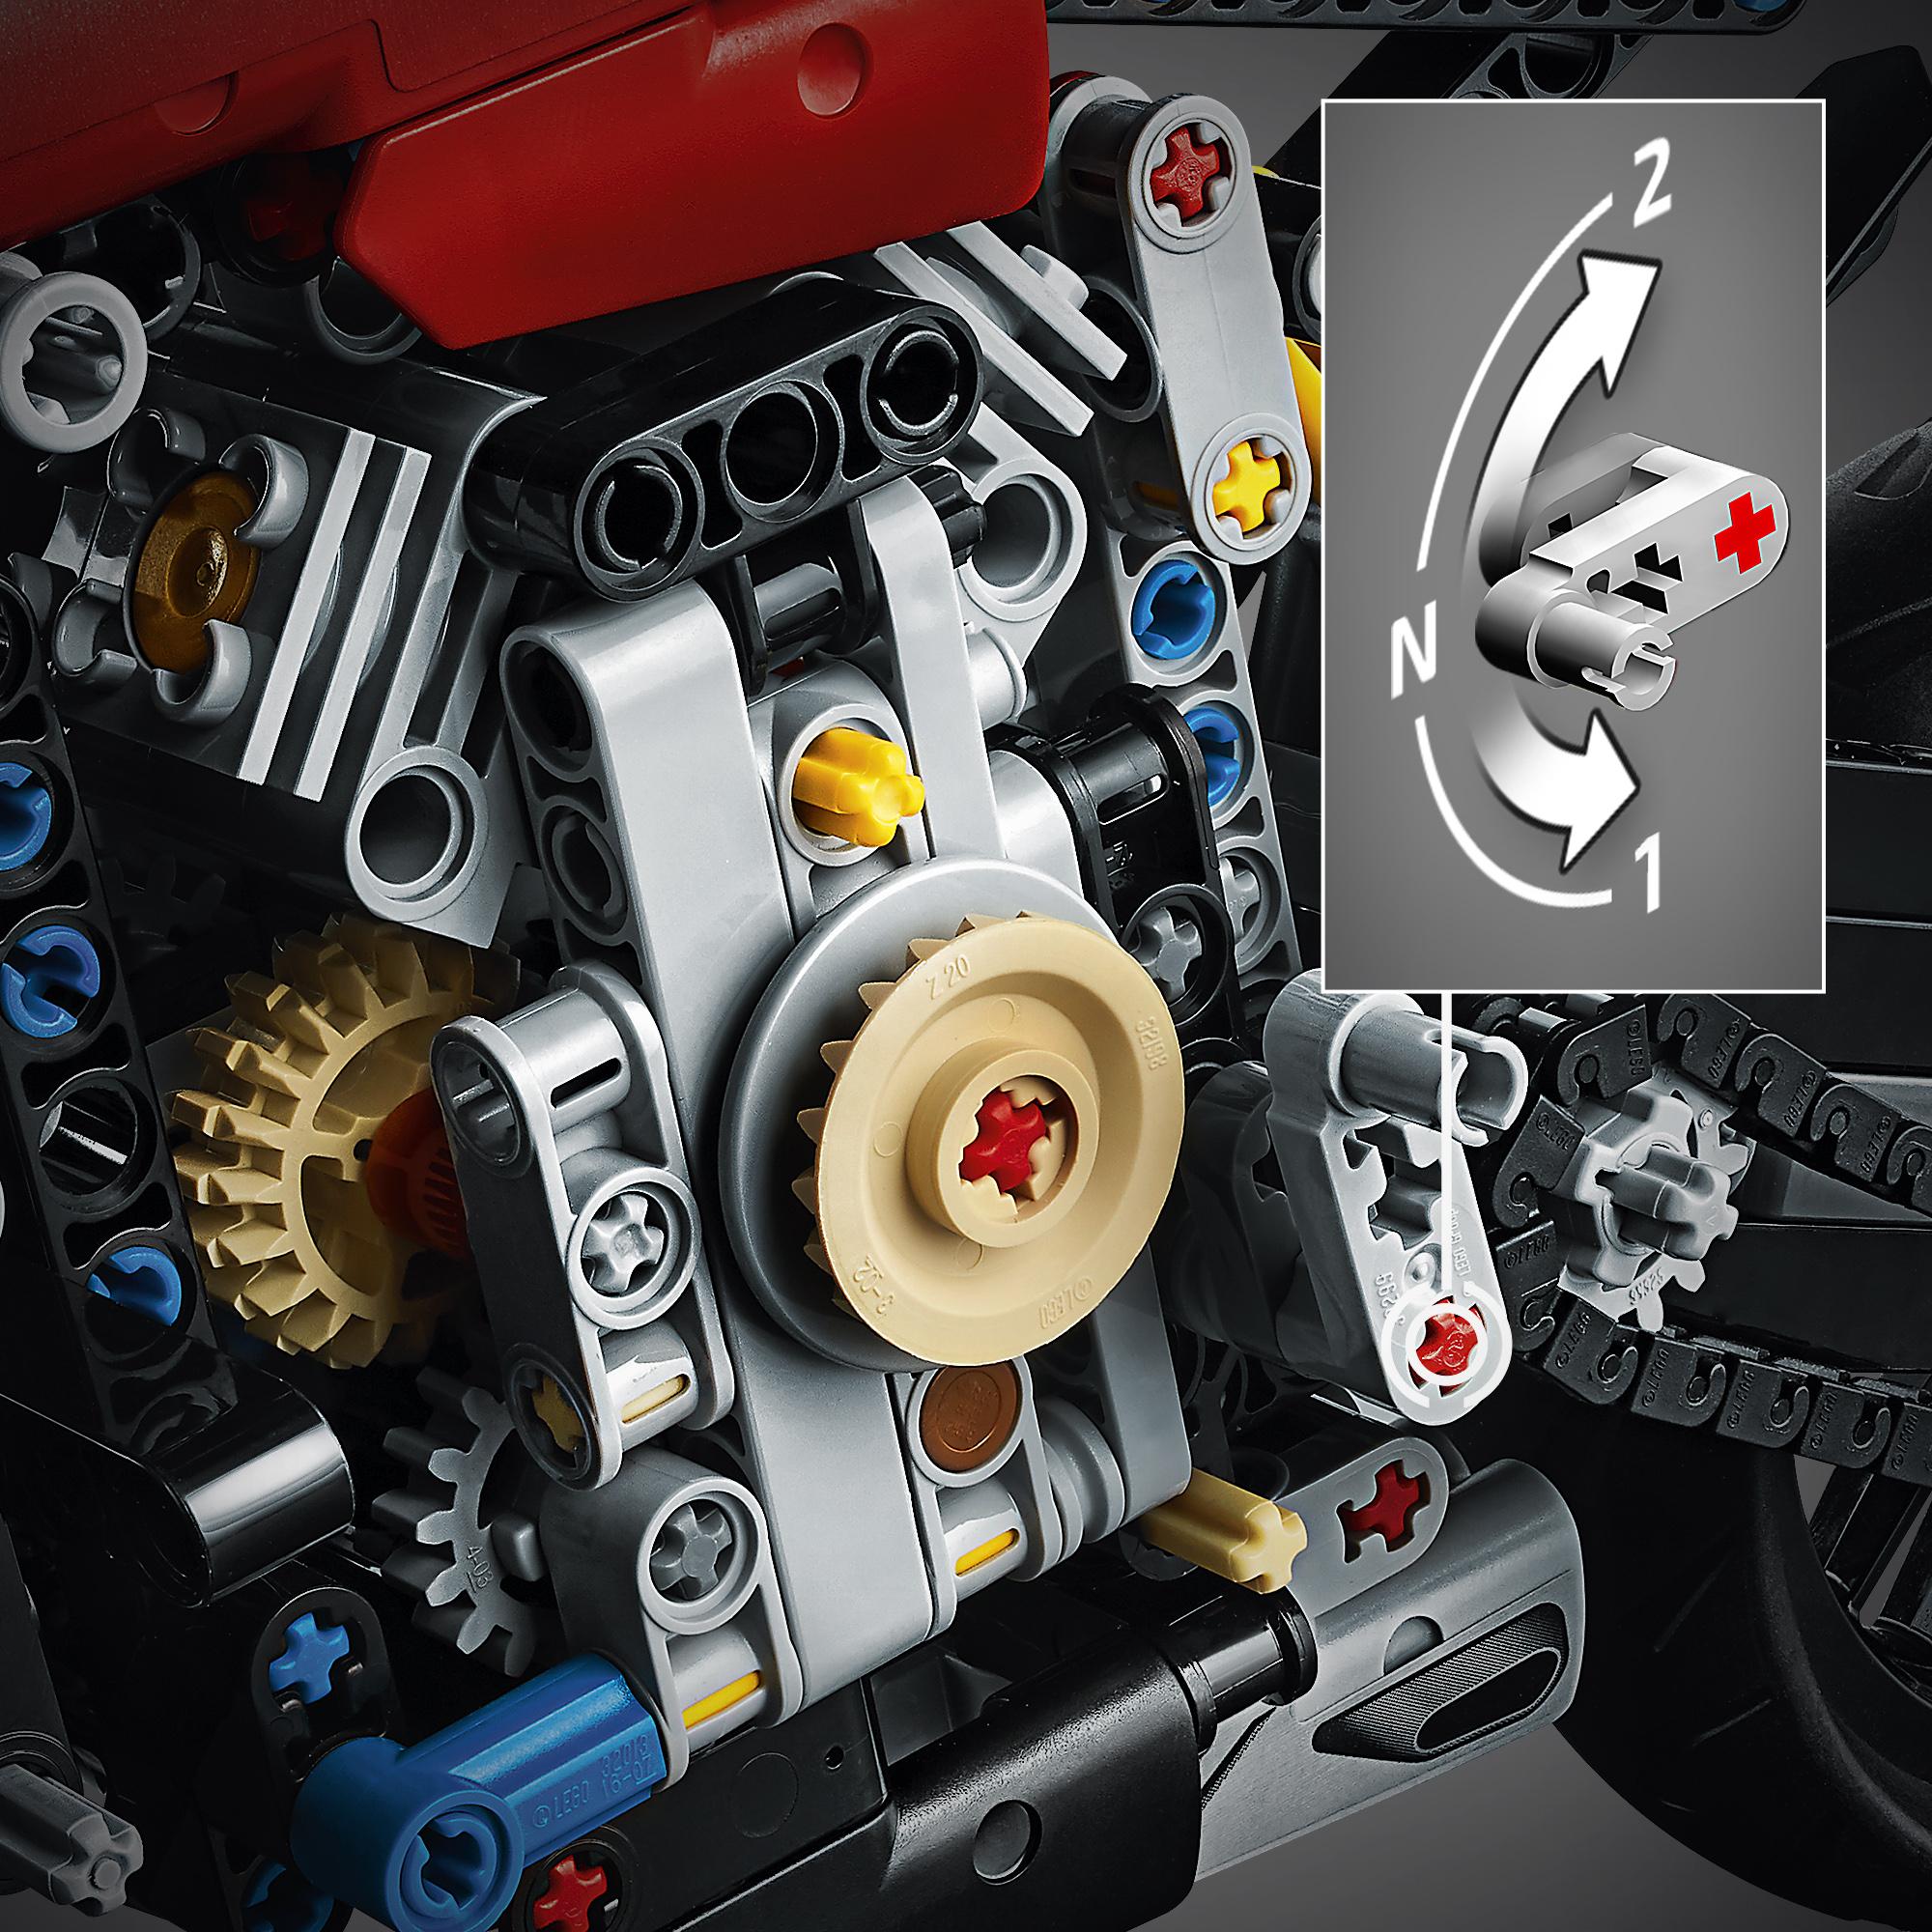 LEGO Technic 42107 Ducati Panigale V4 R, Replica Modello Originale, da Collezione - LEGO